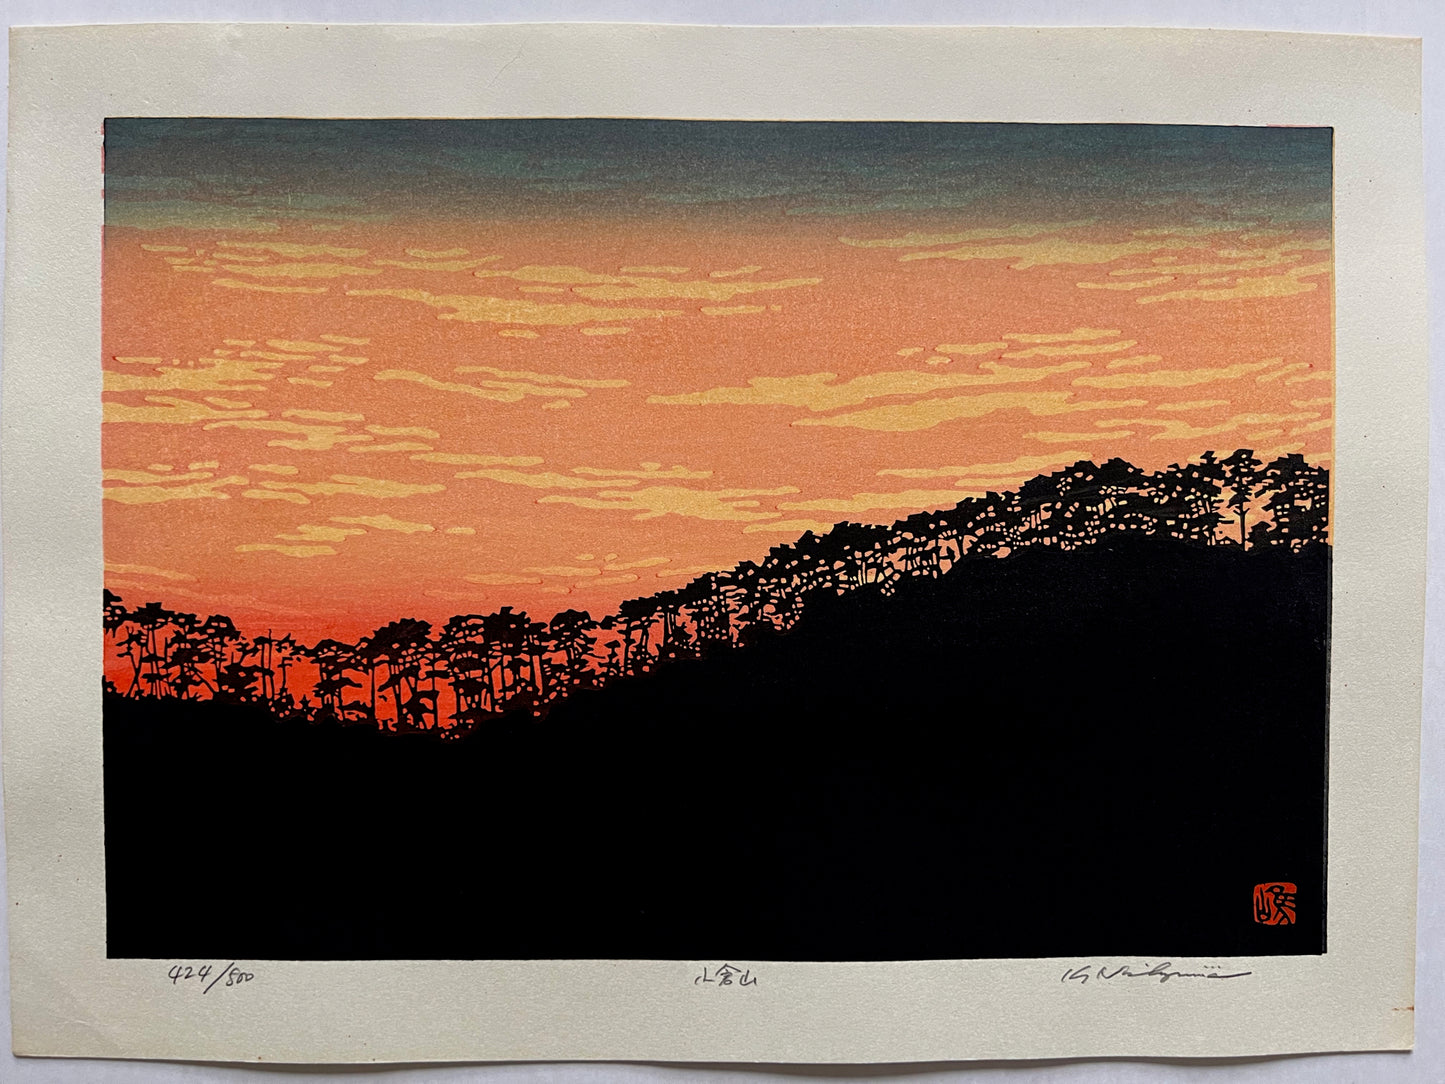 estampe japonaise contemporaine, les arbres du sommet de la montagne se découpent en ombre chinoise sur la lumière rouge flamboyante du coucher de soleil